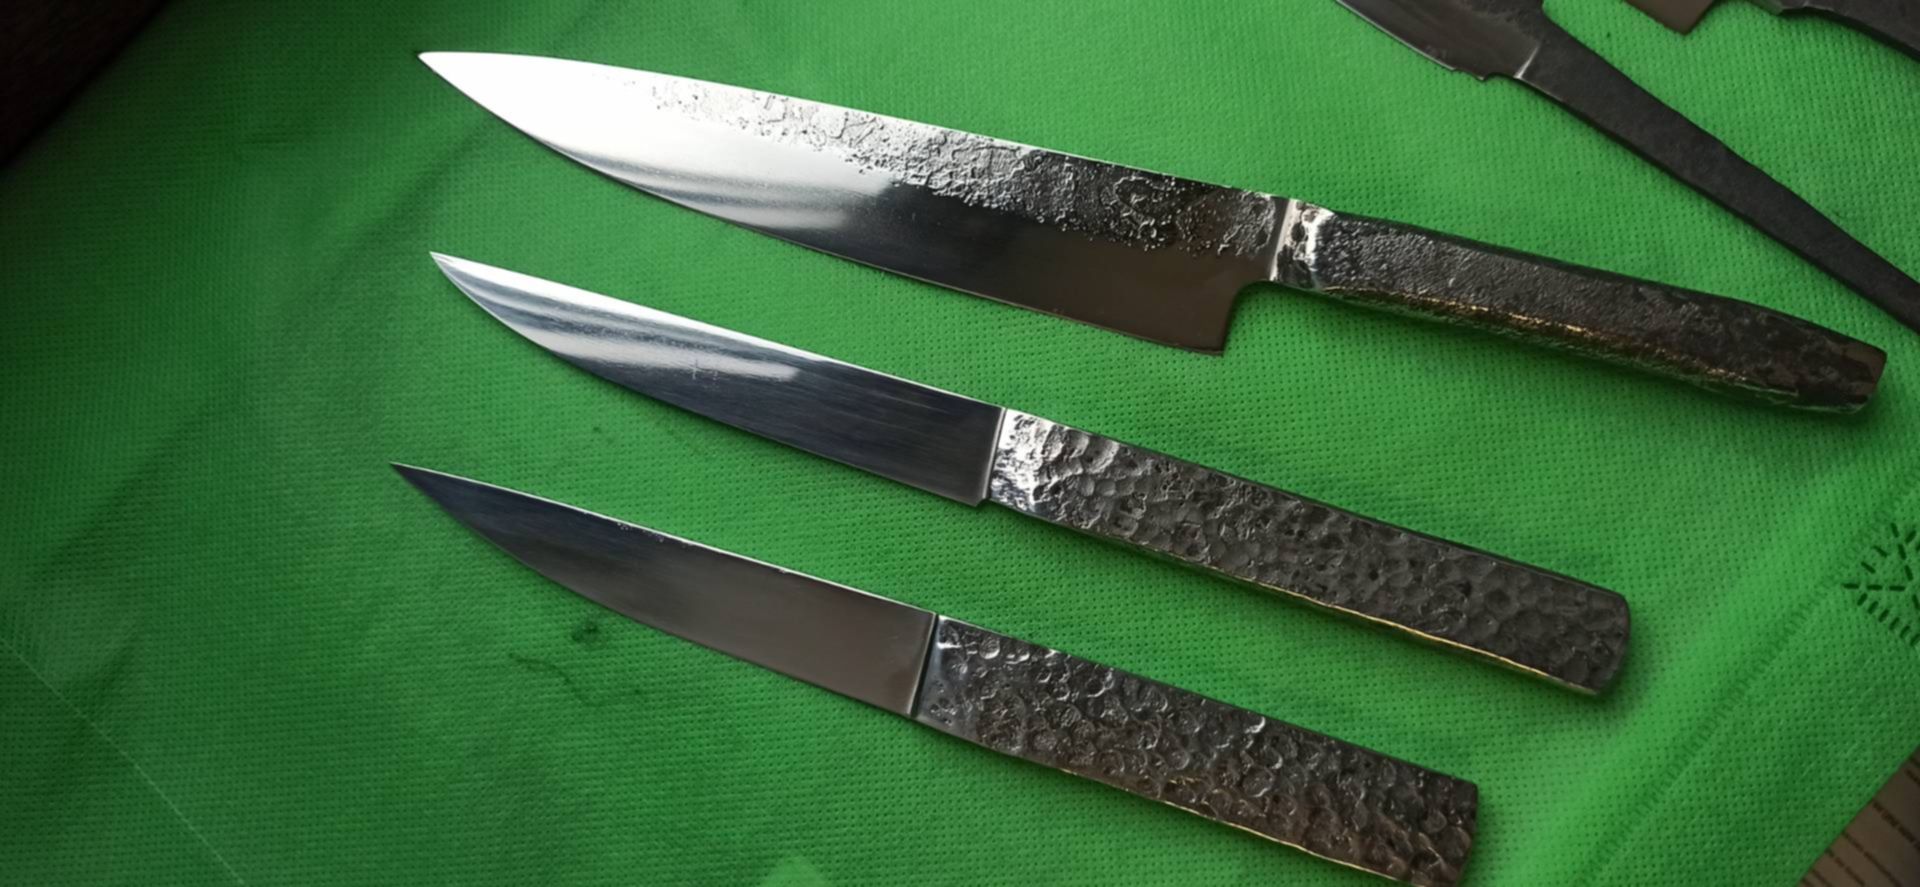 12с27 нож. Нож 12. Нож из 12 Михалкова. Камбоджийские ножи 12 века.